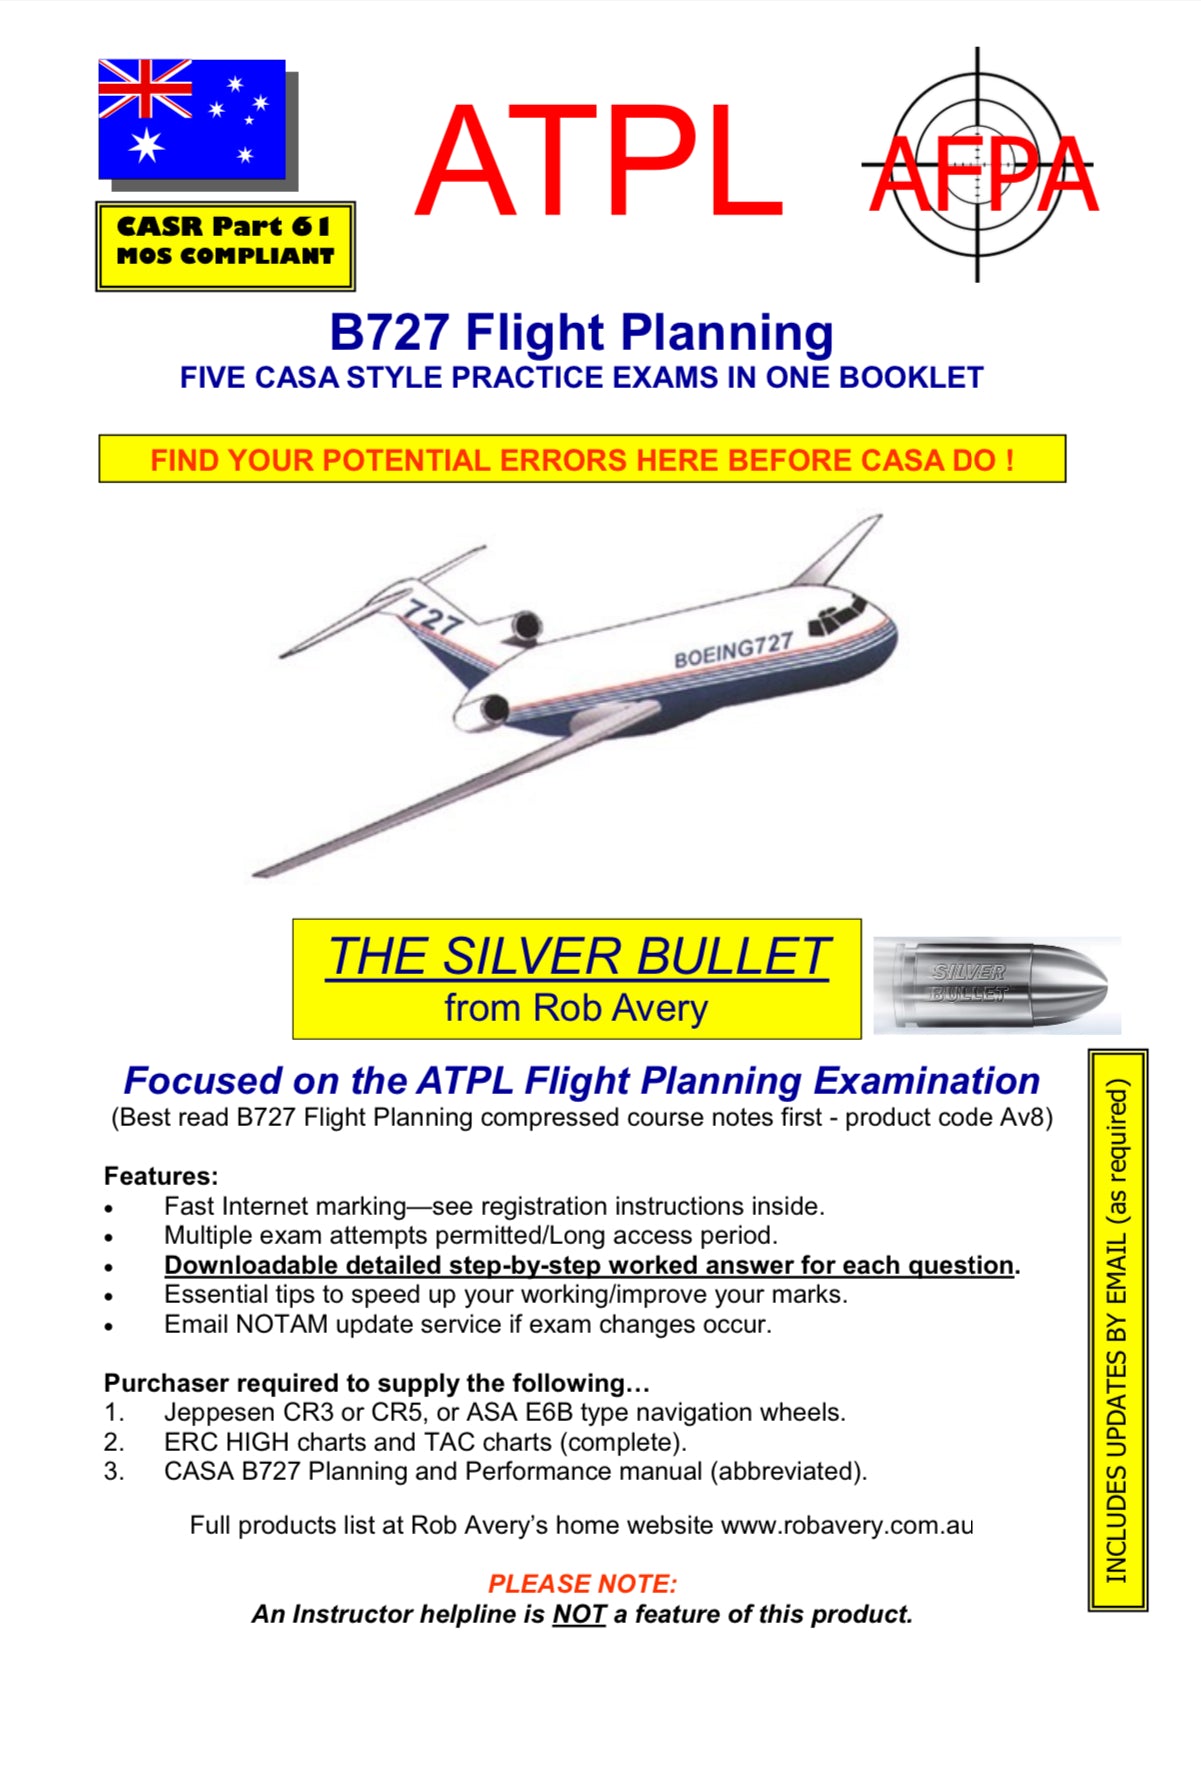 Avfacts by Rob Avery ATPL B727 Flight Planning Exams Book - AV3